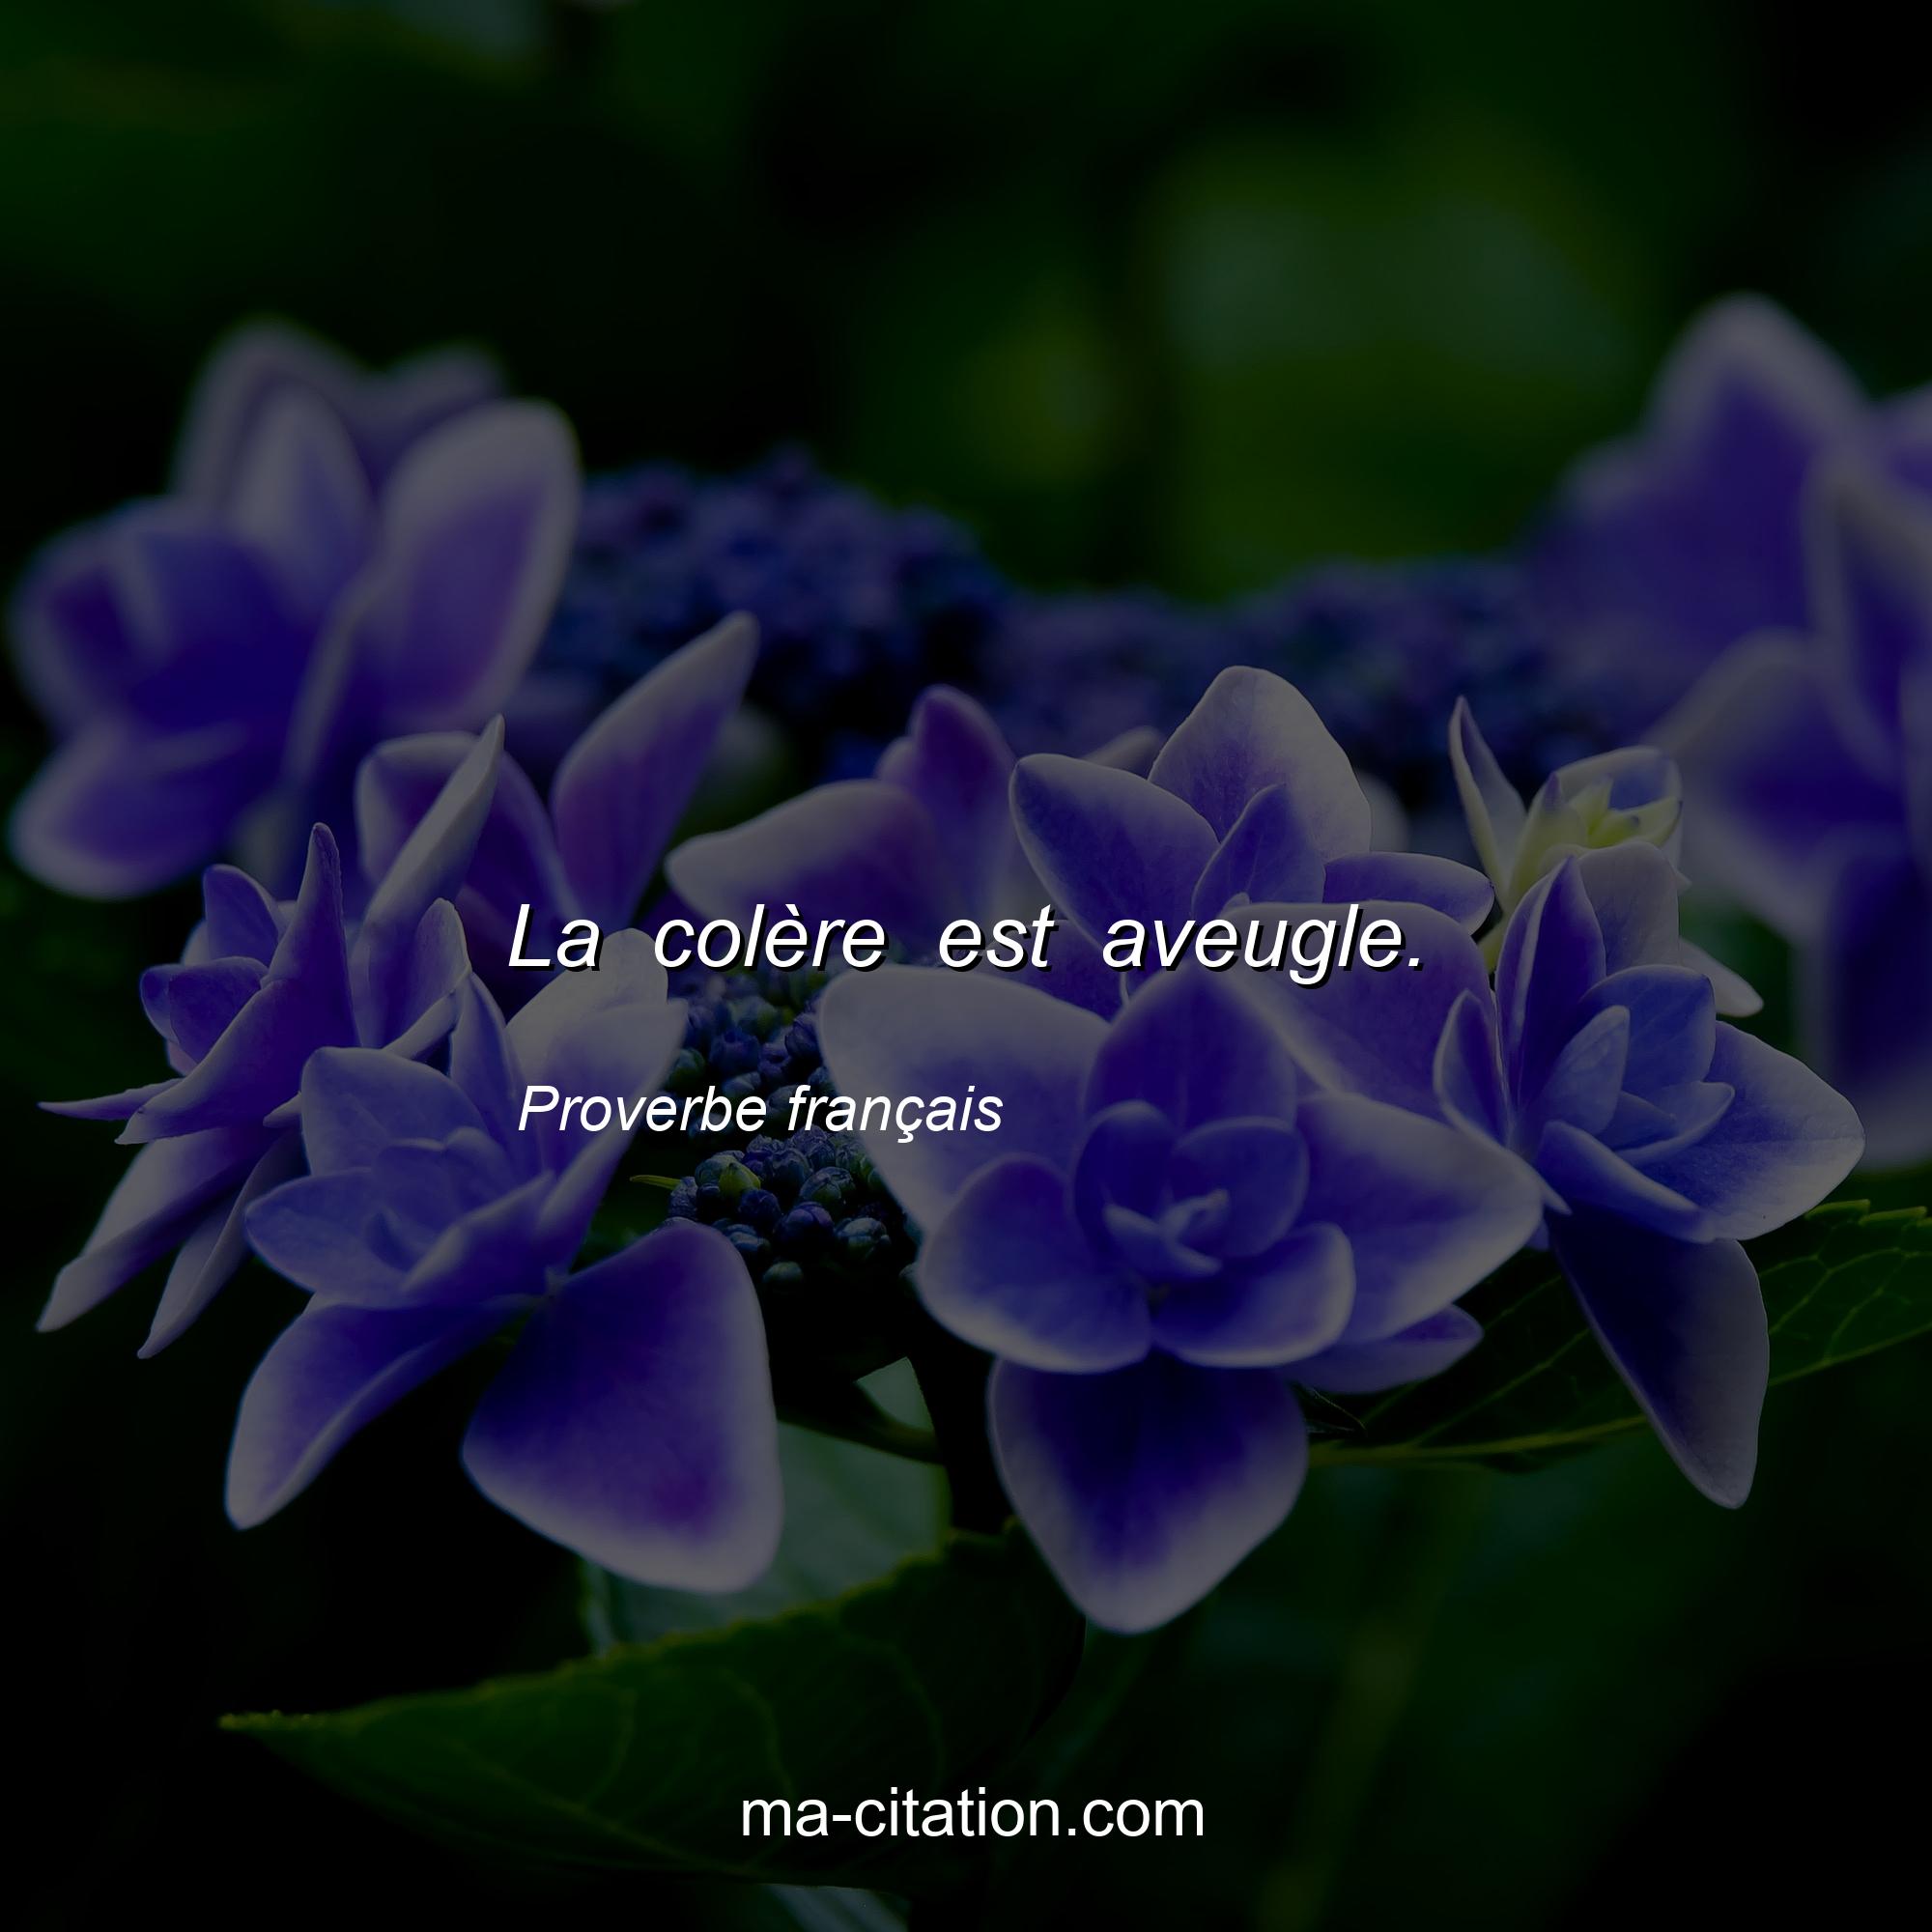 Proverbe français : La colère est aveugle.